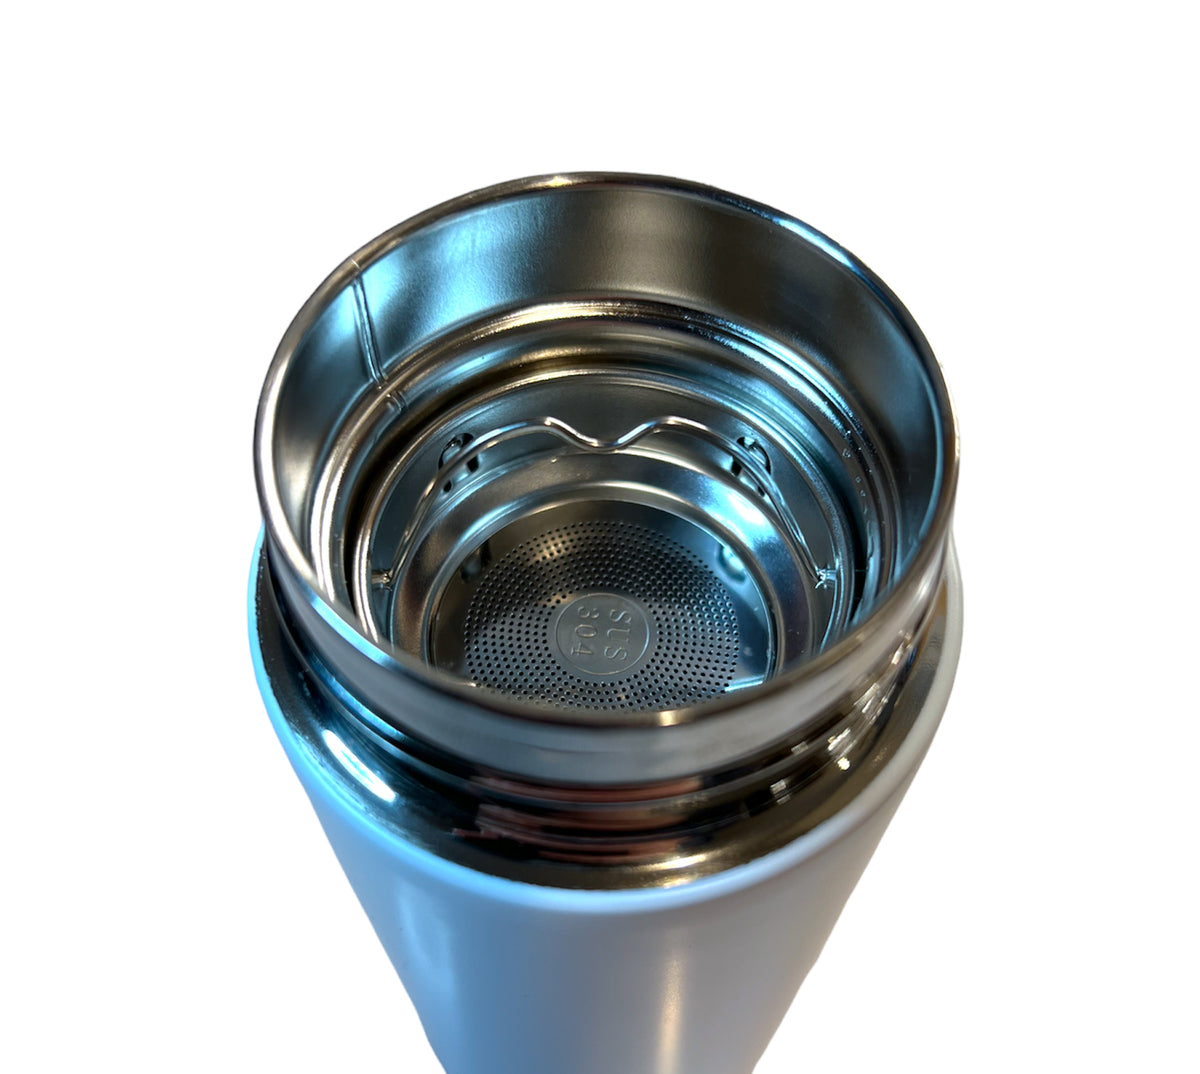 Stainless Steel Water Bottle — Clean Jordan Lake